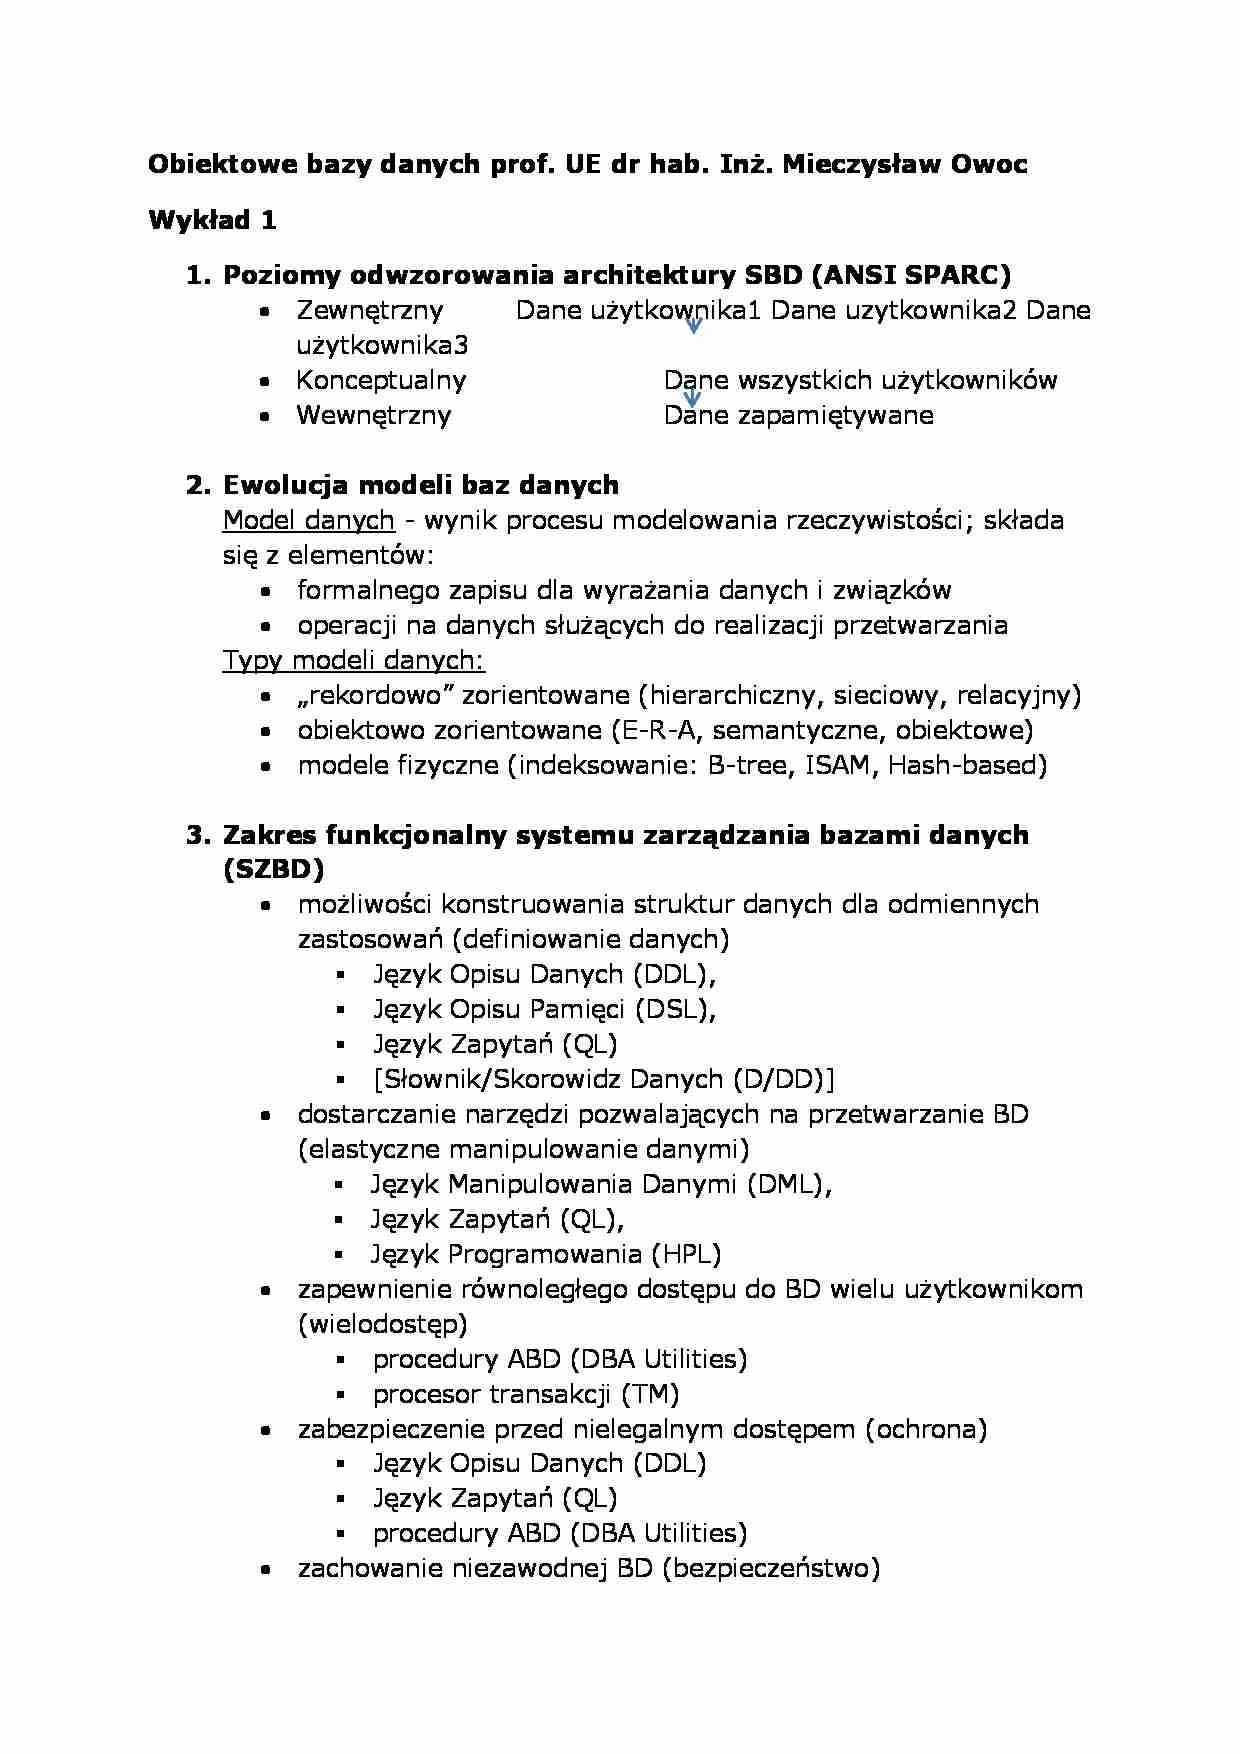 Wykład - Poziomy odwzorowania architektury SBD (ANSI SPARC) - strona 1